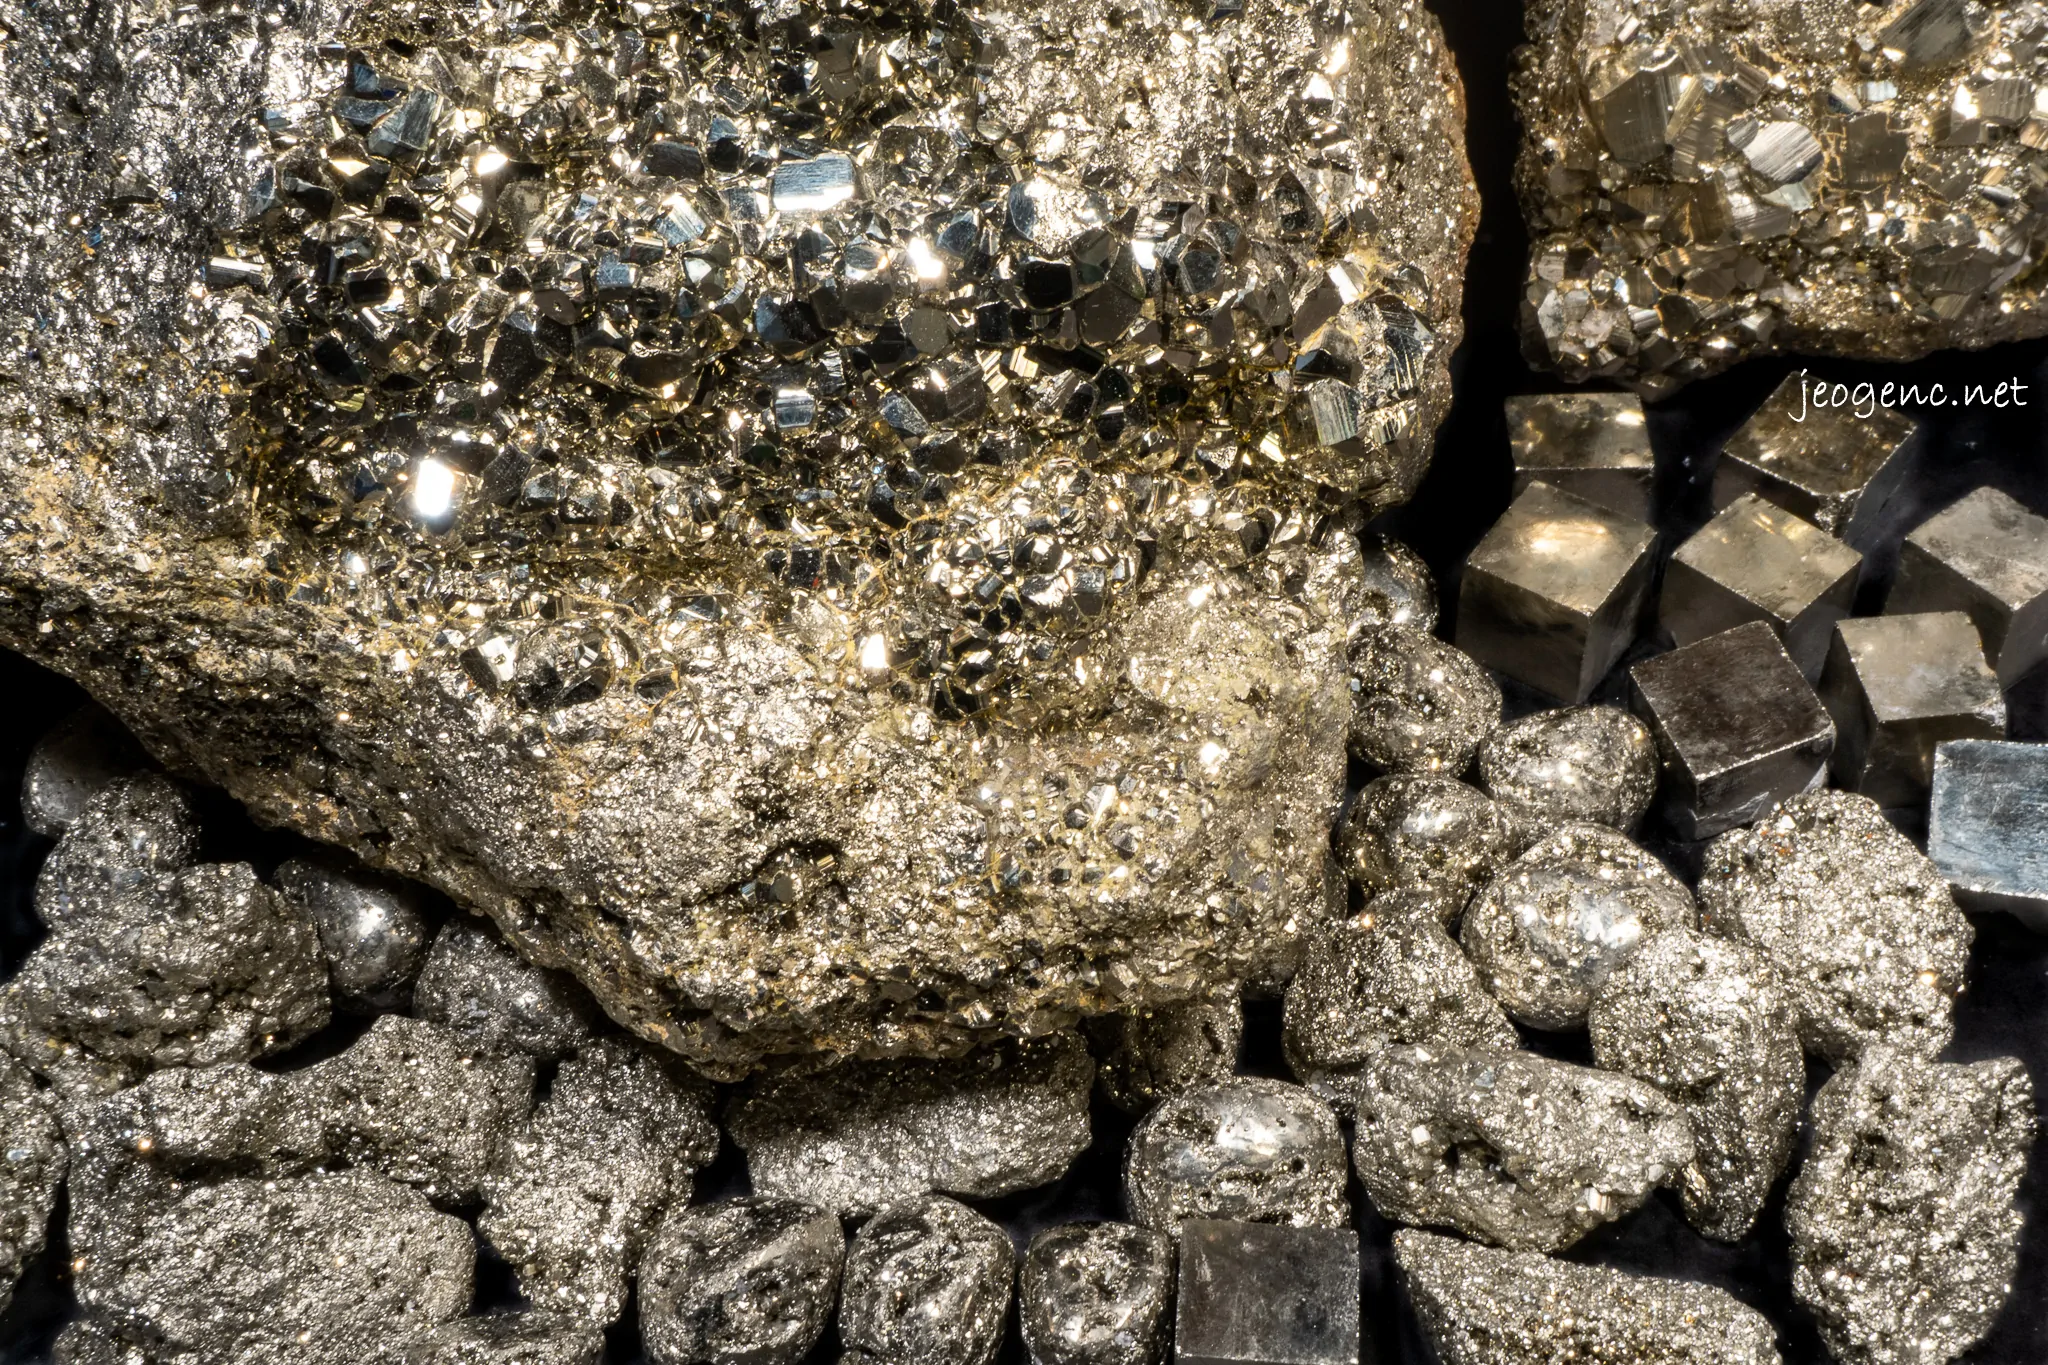 Pirit önemli bir demir kaynağıdır ve aynı zamanda kükürt kaynağı olarak da kullanılır.